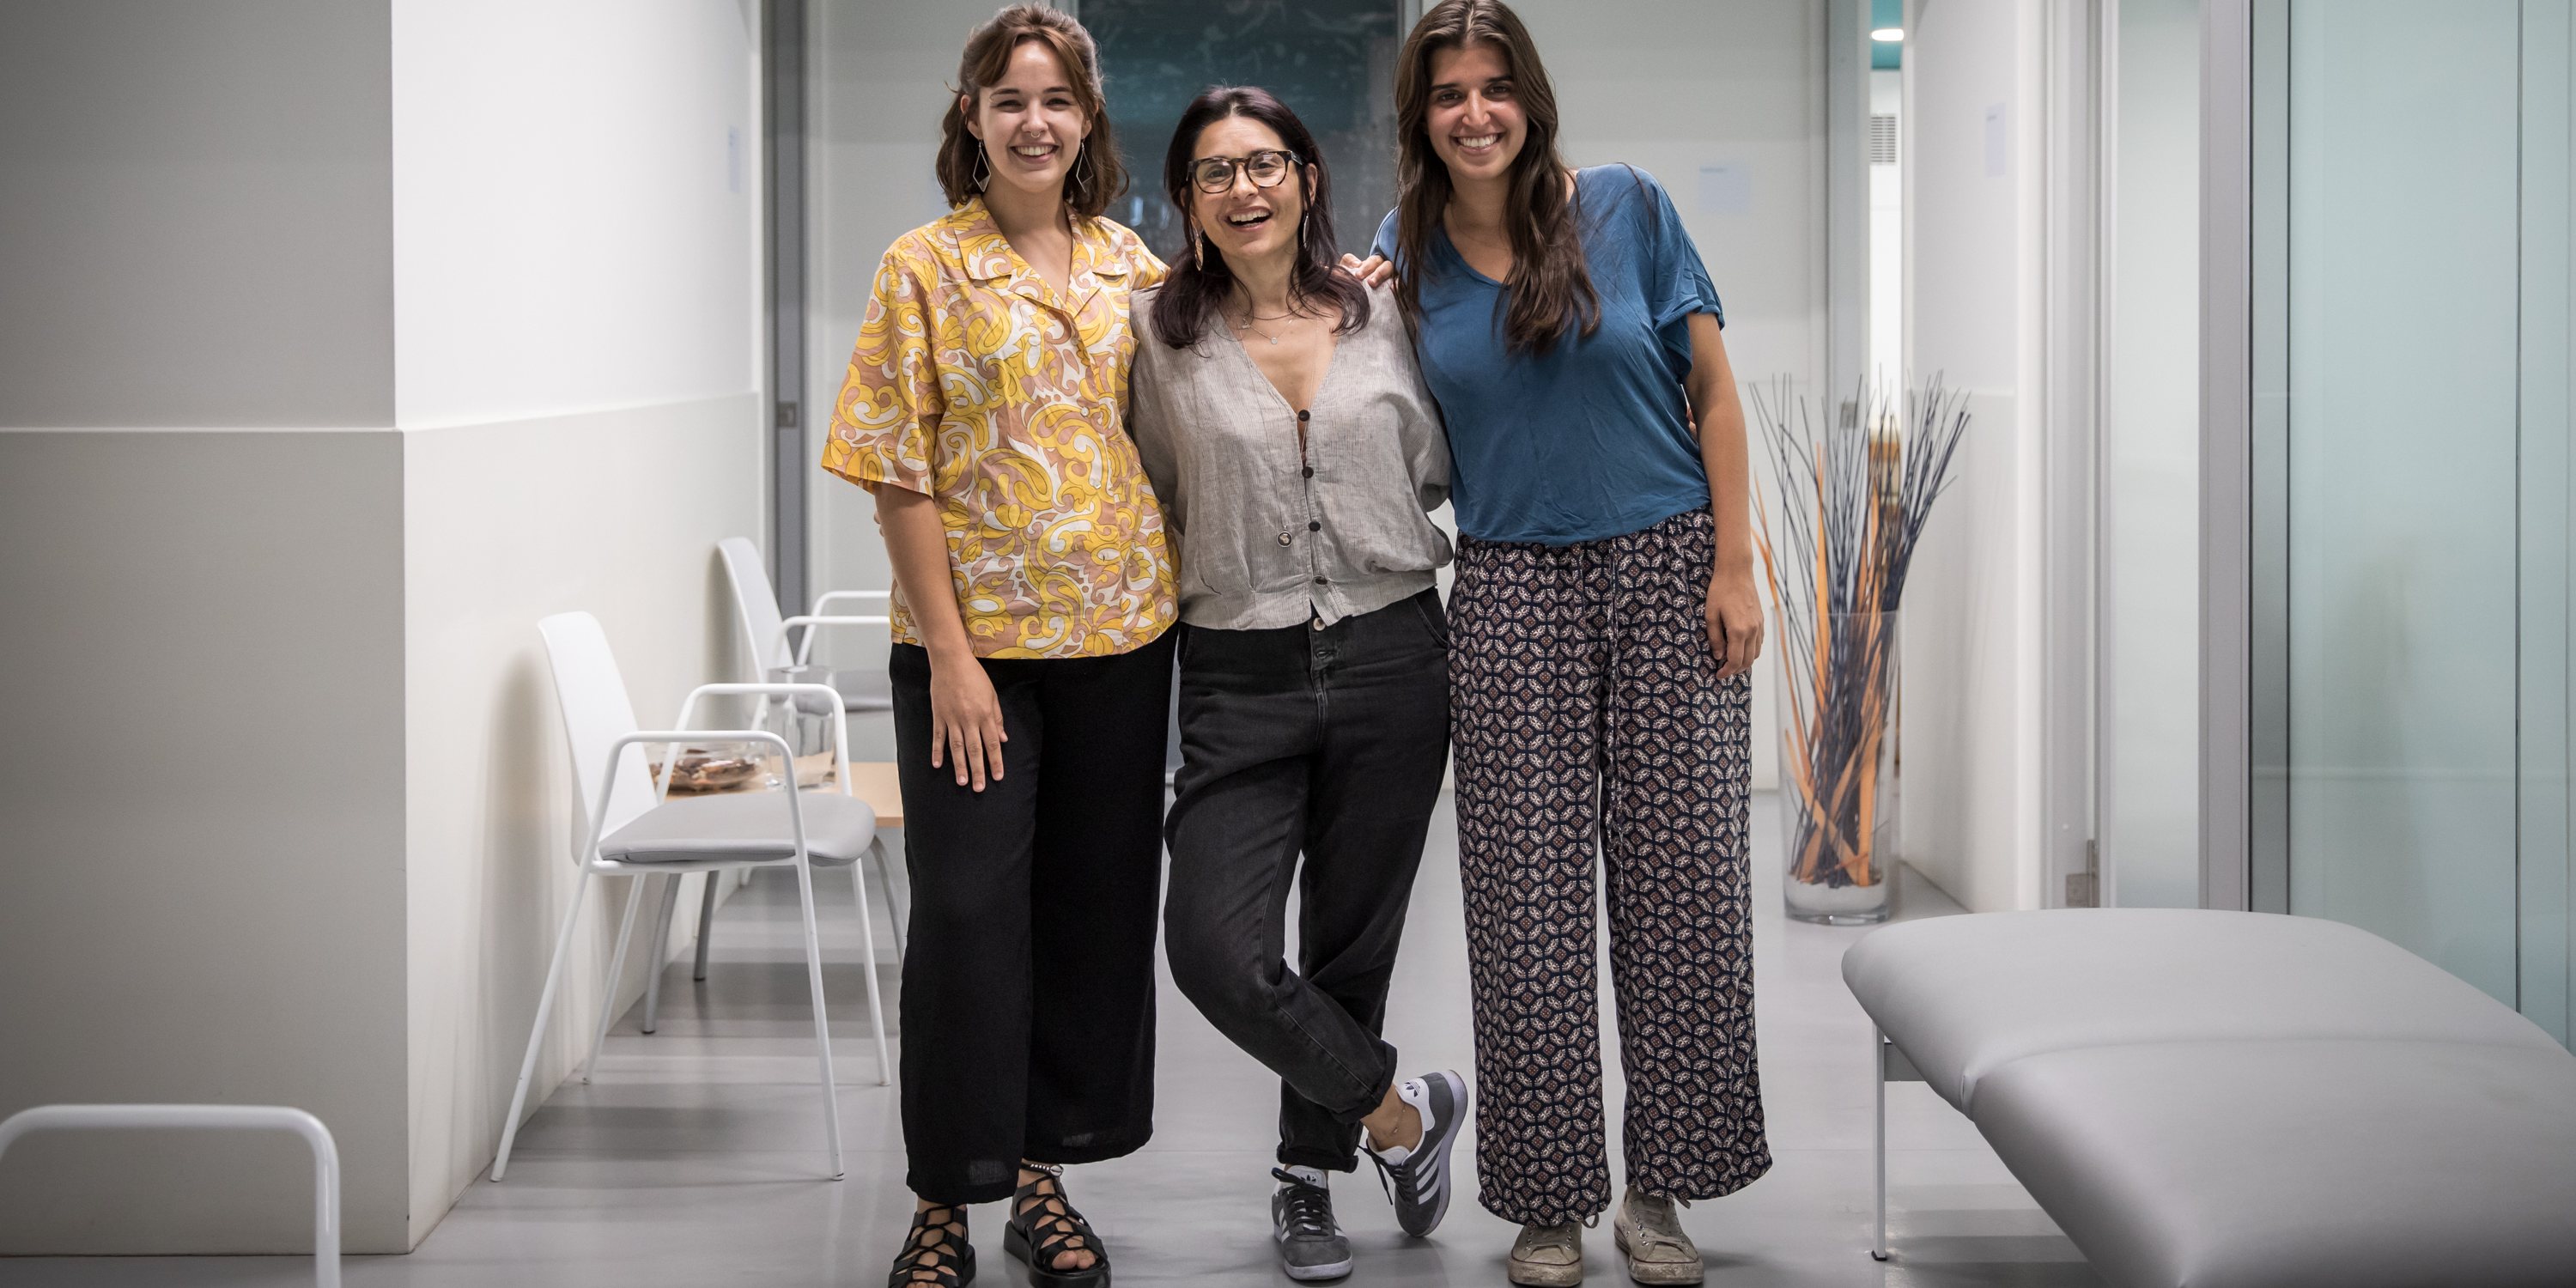 A psicóloga Sónia Santos (ao centro) e as psicólogas estagiárias Maria Corrêa e Maria João Figueiredo fazem parte da equipa da W+, coordenada por Sónia